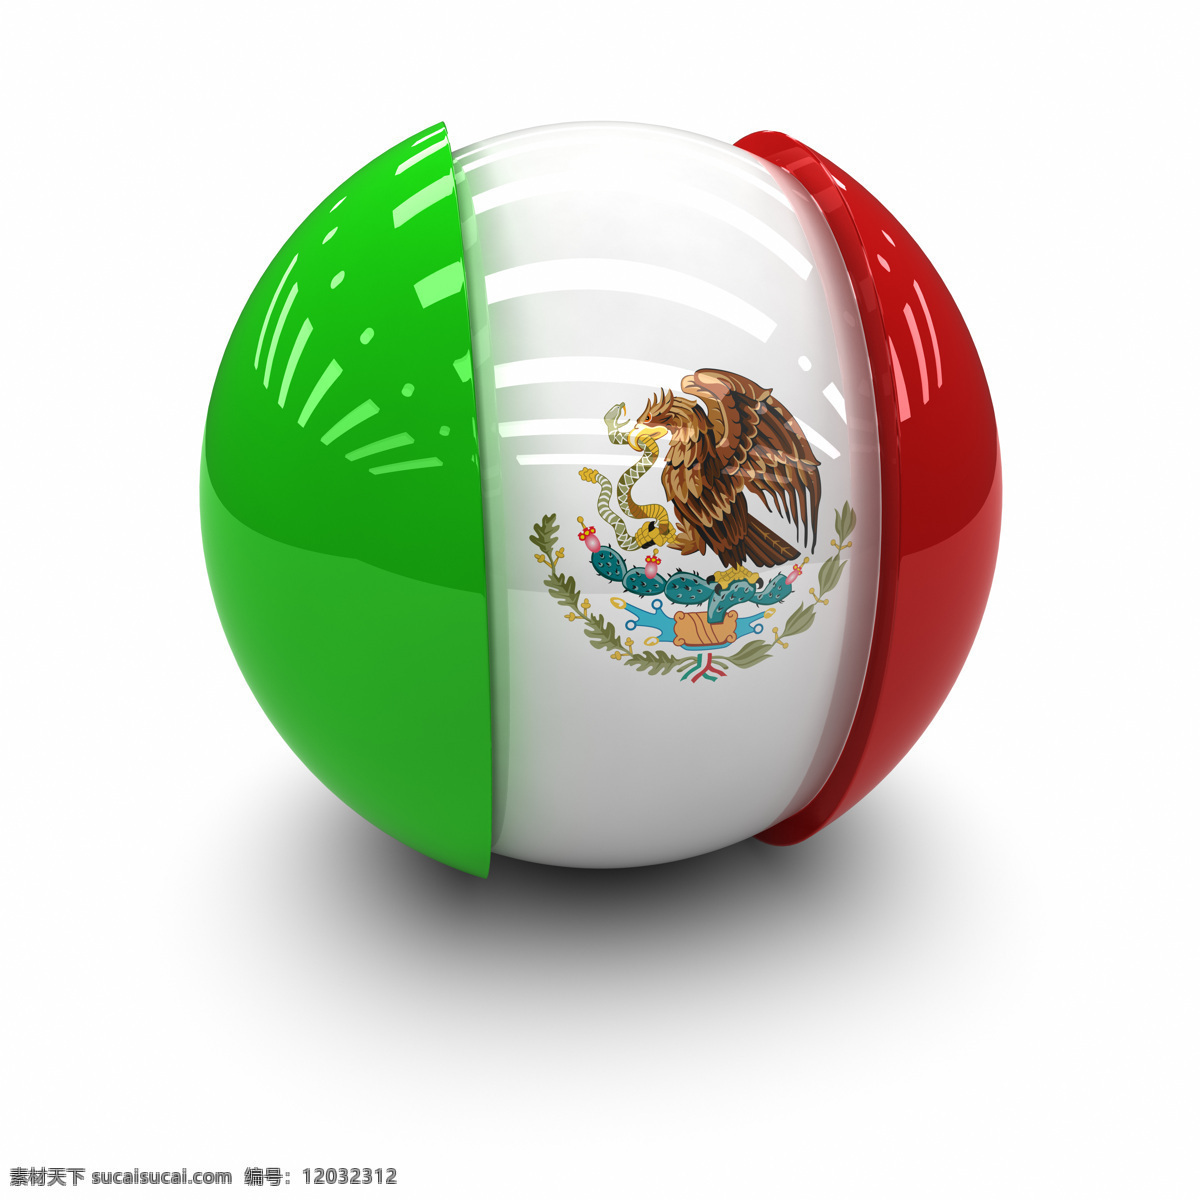 墨西哥 国旗 球体 墨西哥国旗 国徽图案 地图图片 生活百科